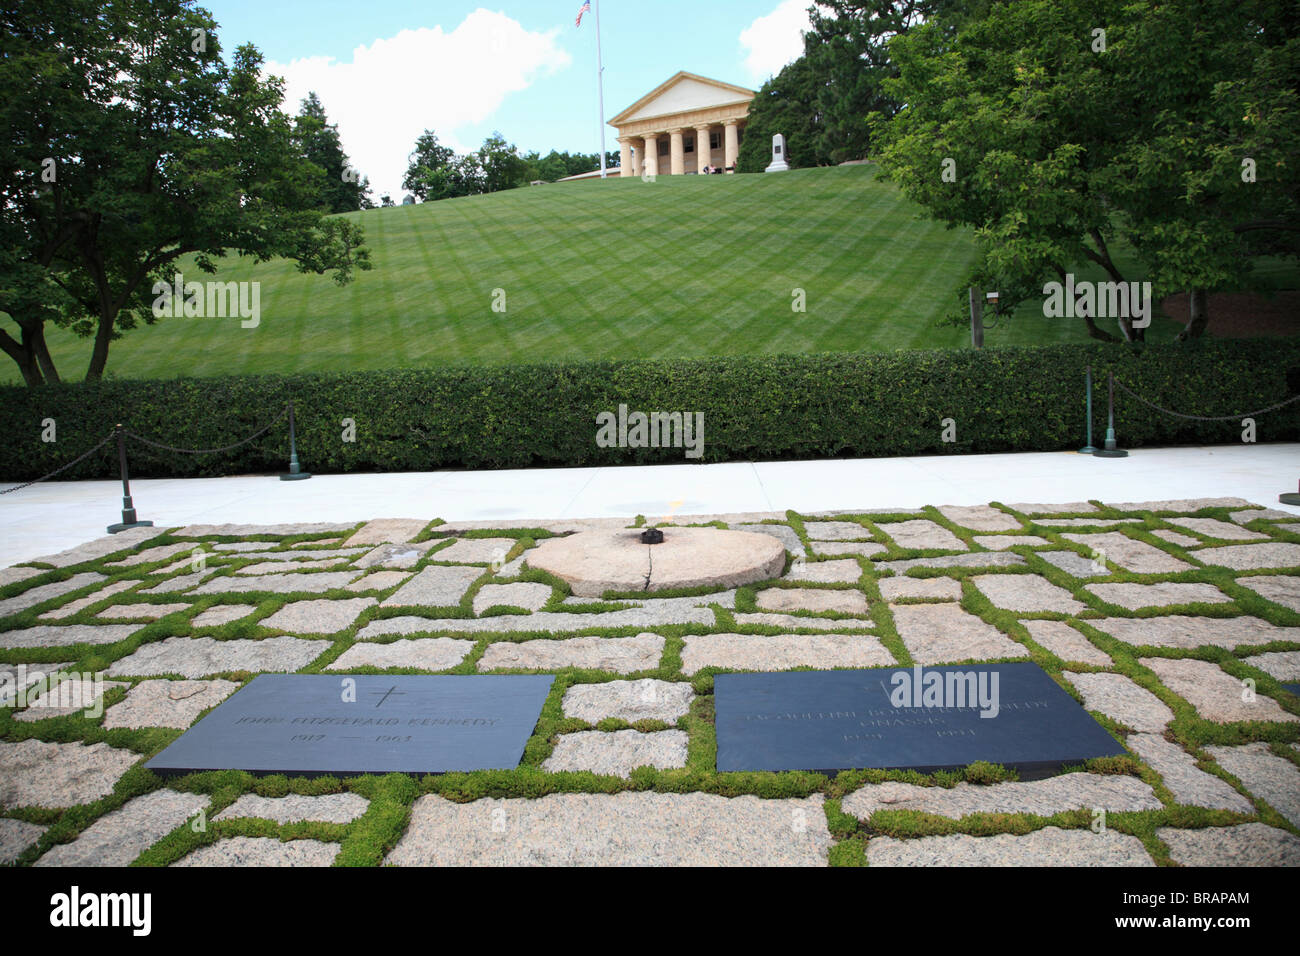 Flamme éternelle, Kennedy tombe, le Cimetière National d'Arlington, Arlington, Virginie, États-Unis d'Amérique, Amérique du Nord Banque D'Images